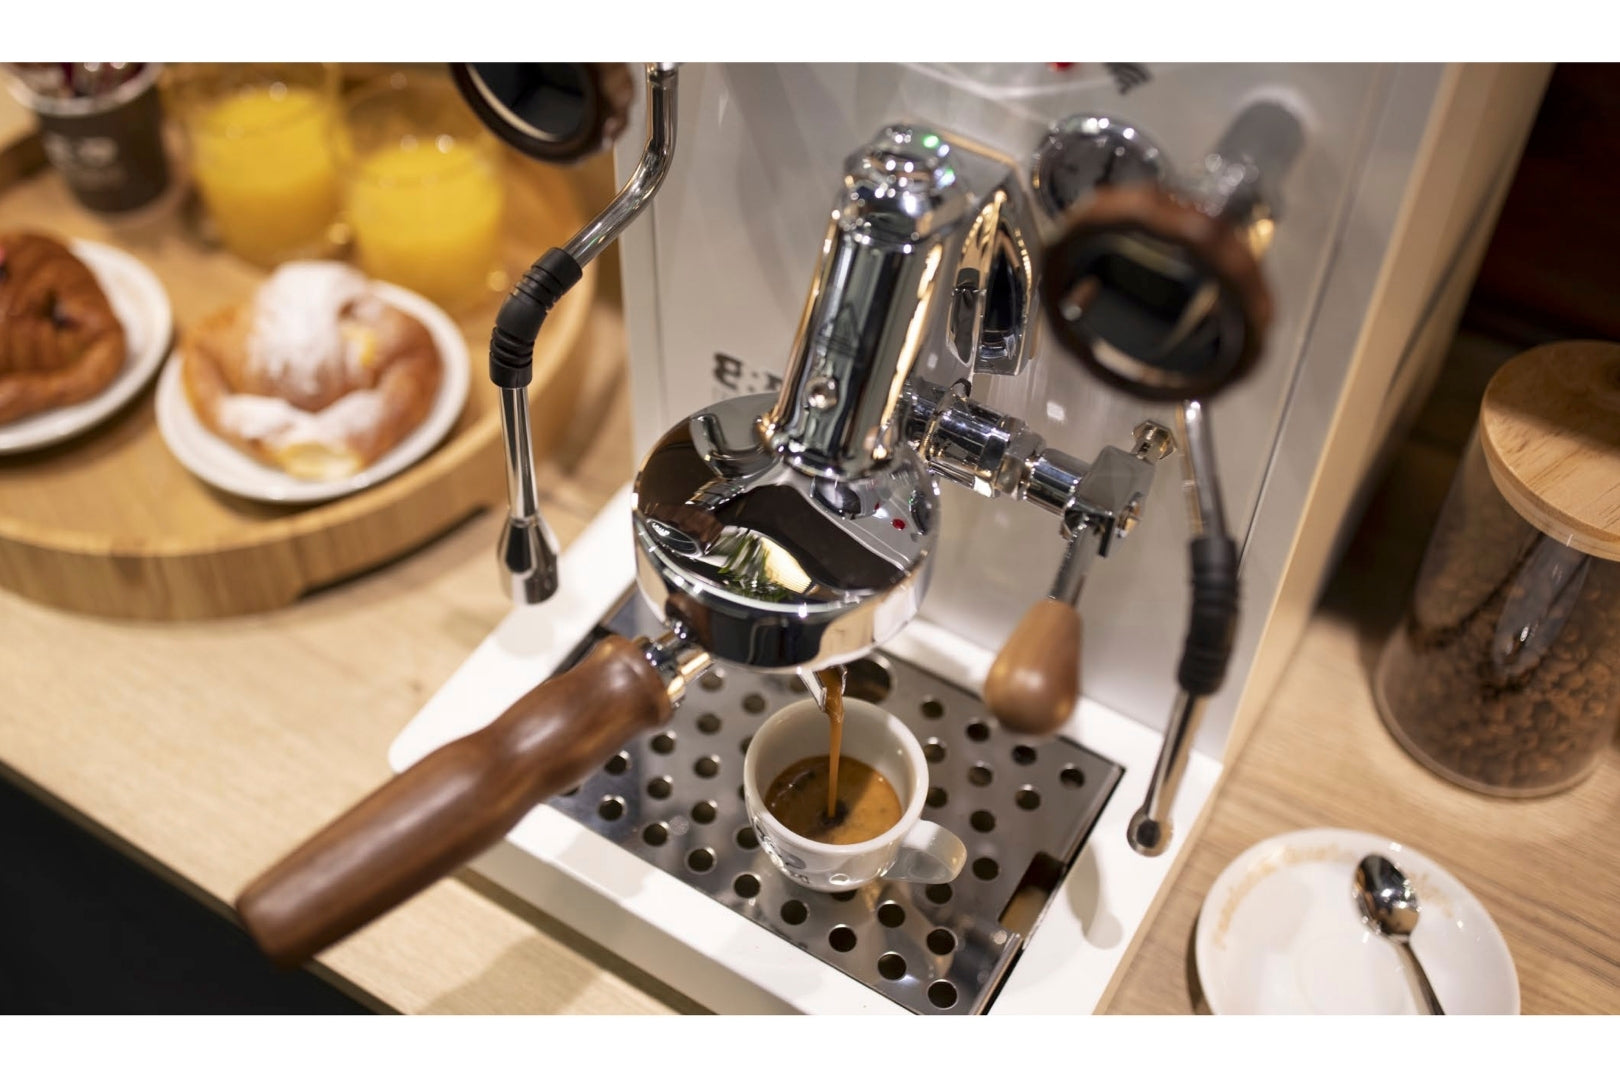 Biepi Sara traditional espresso coffee machine